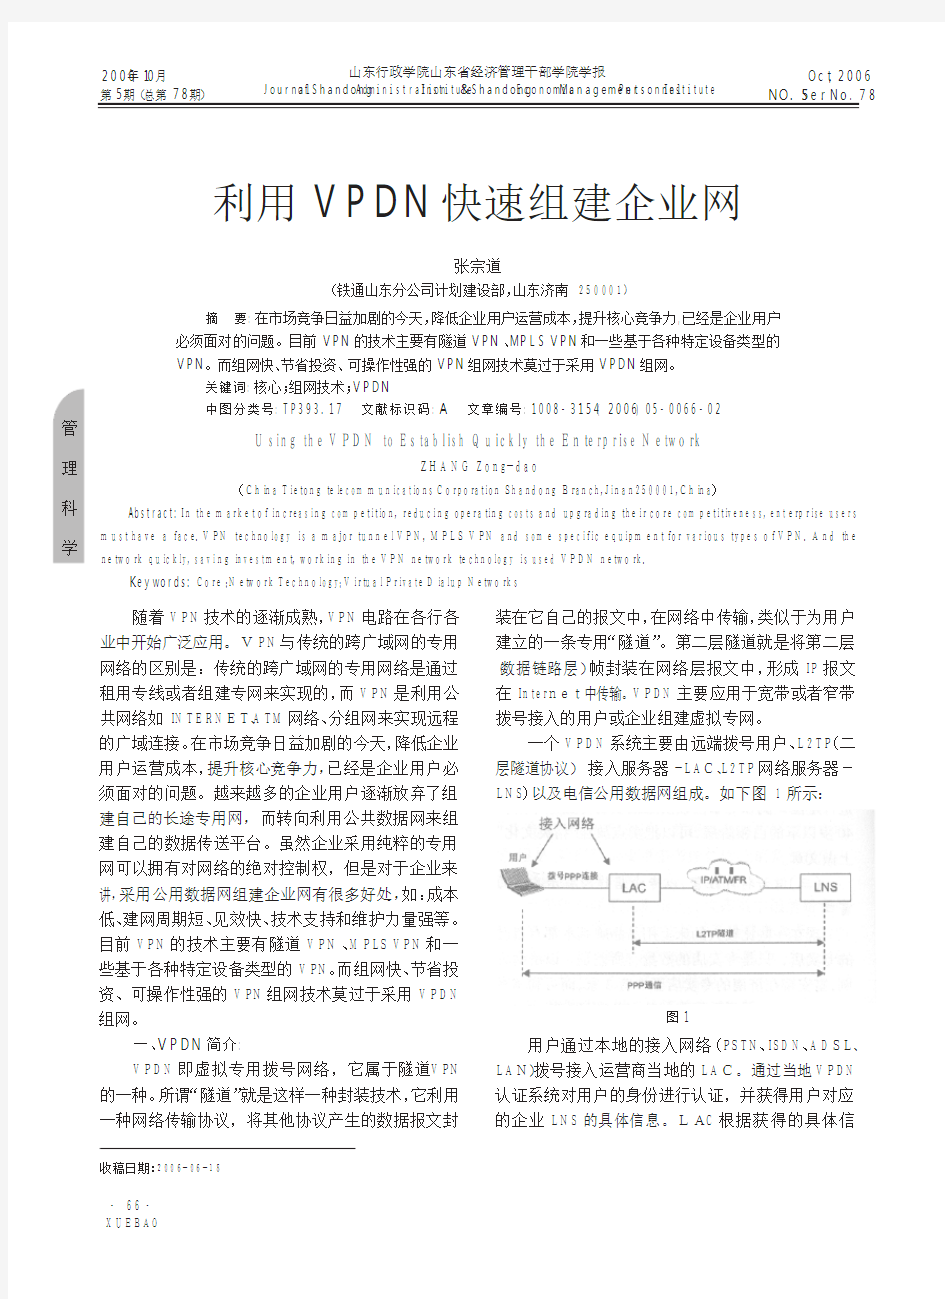 利用VPDN快速组建企业网